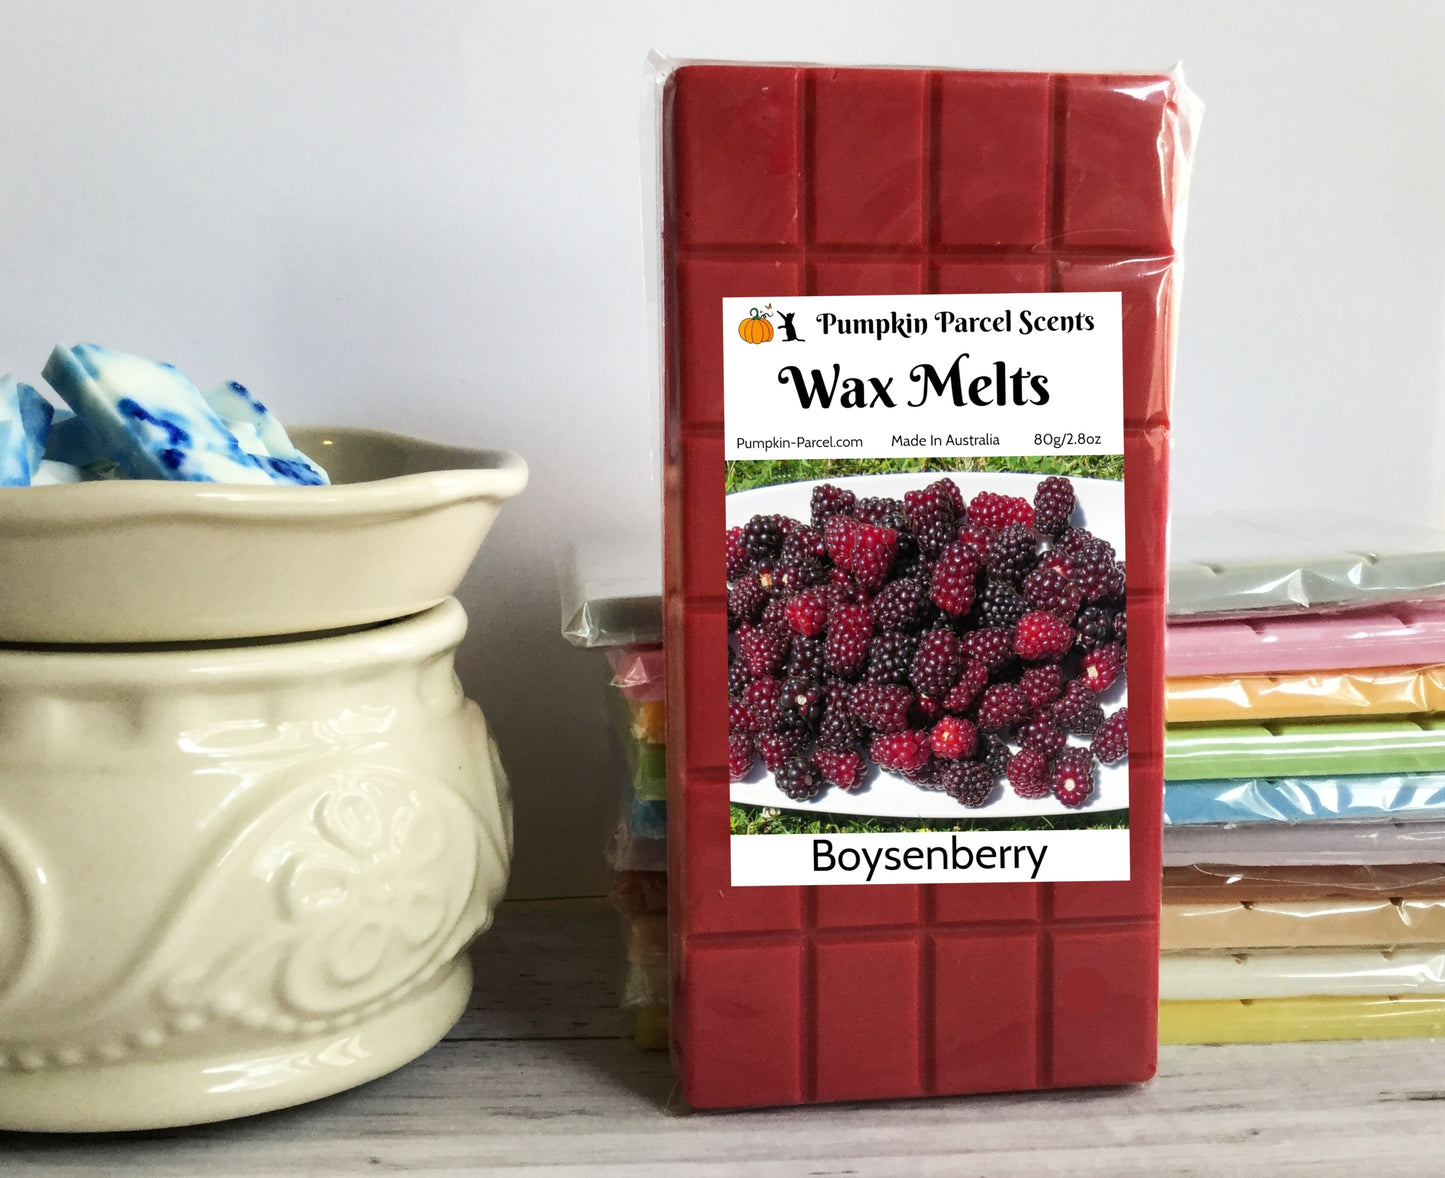 Boysenberry Wax Melts